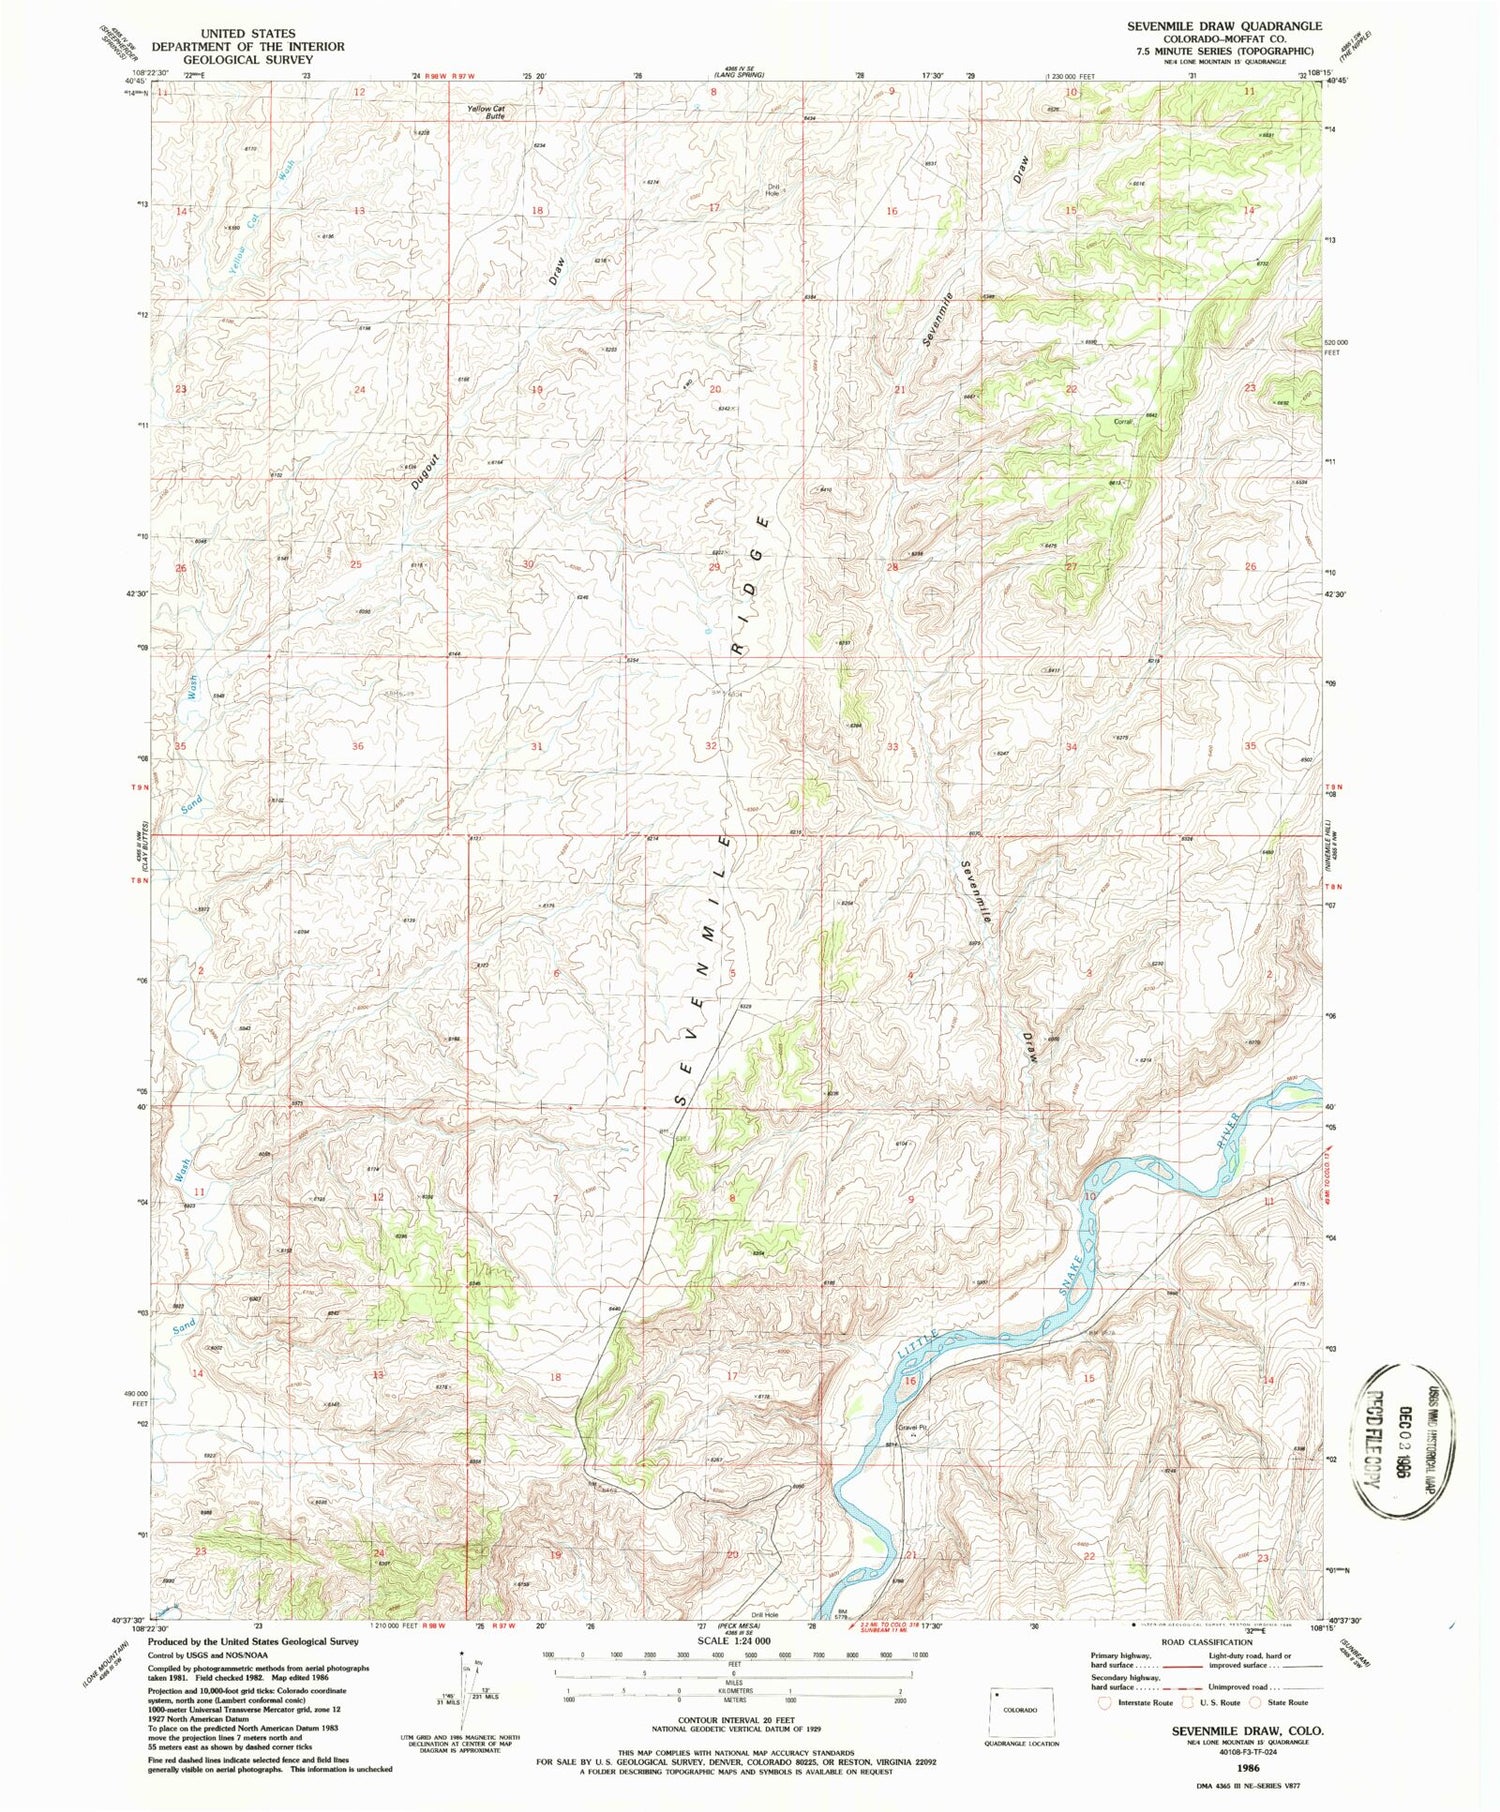 Classic USGS Sevenmile Draw Colorado 7.5'x7.5' Topo Map Image